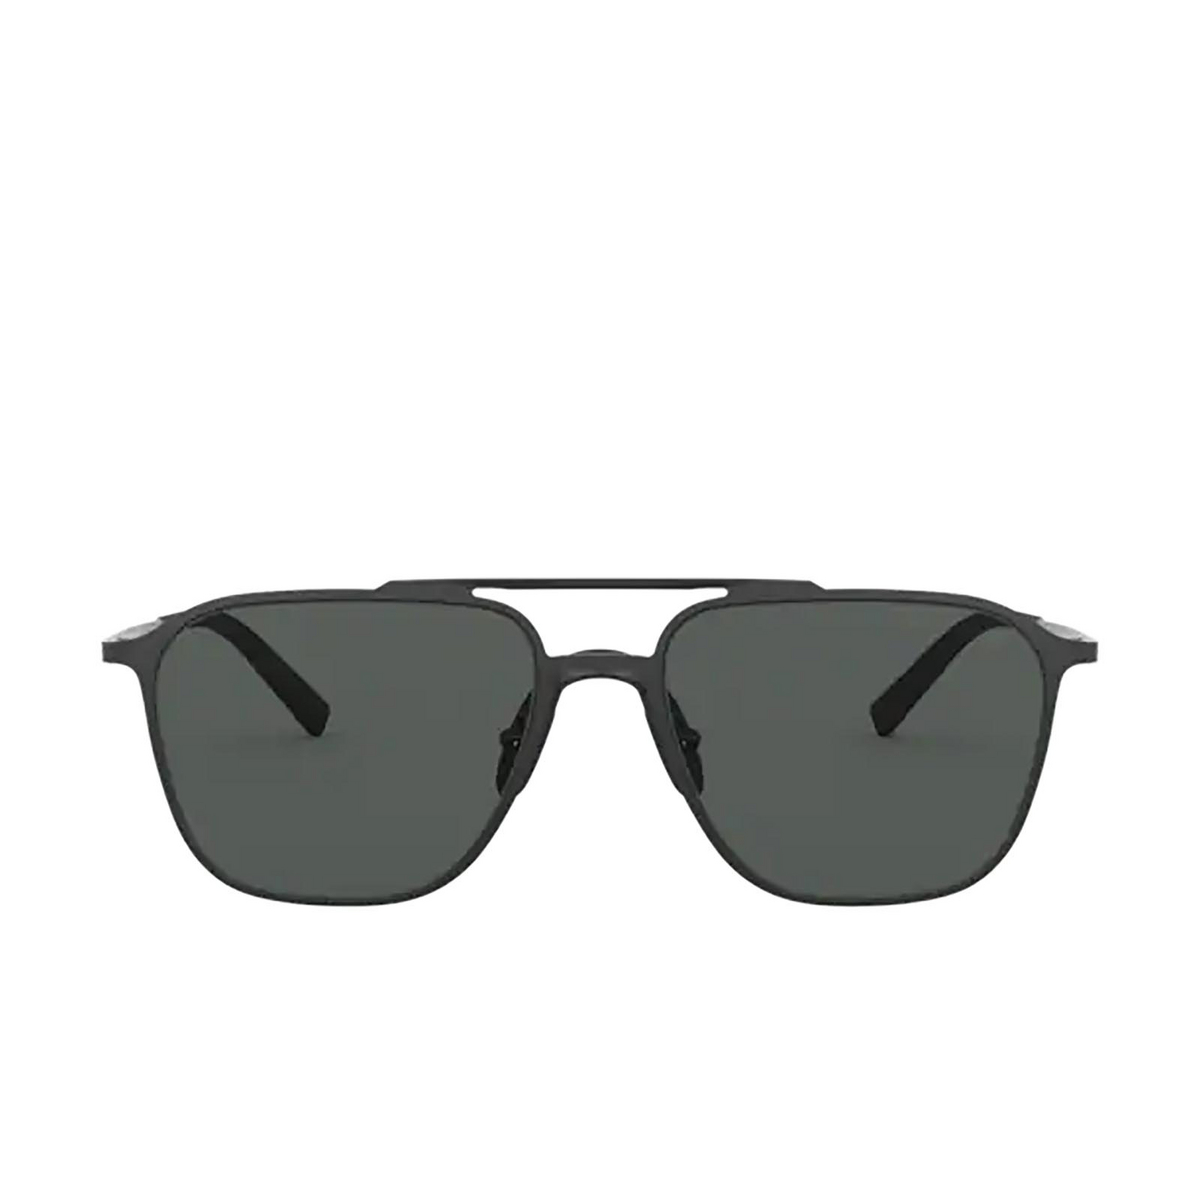 Giorgio Armani® Square Sunglasses: AR6110 color Matte Black 300187 - front view.